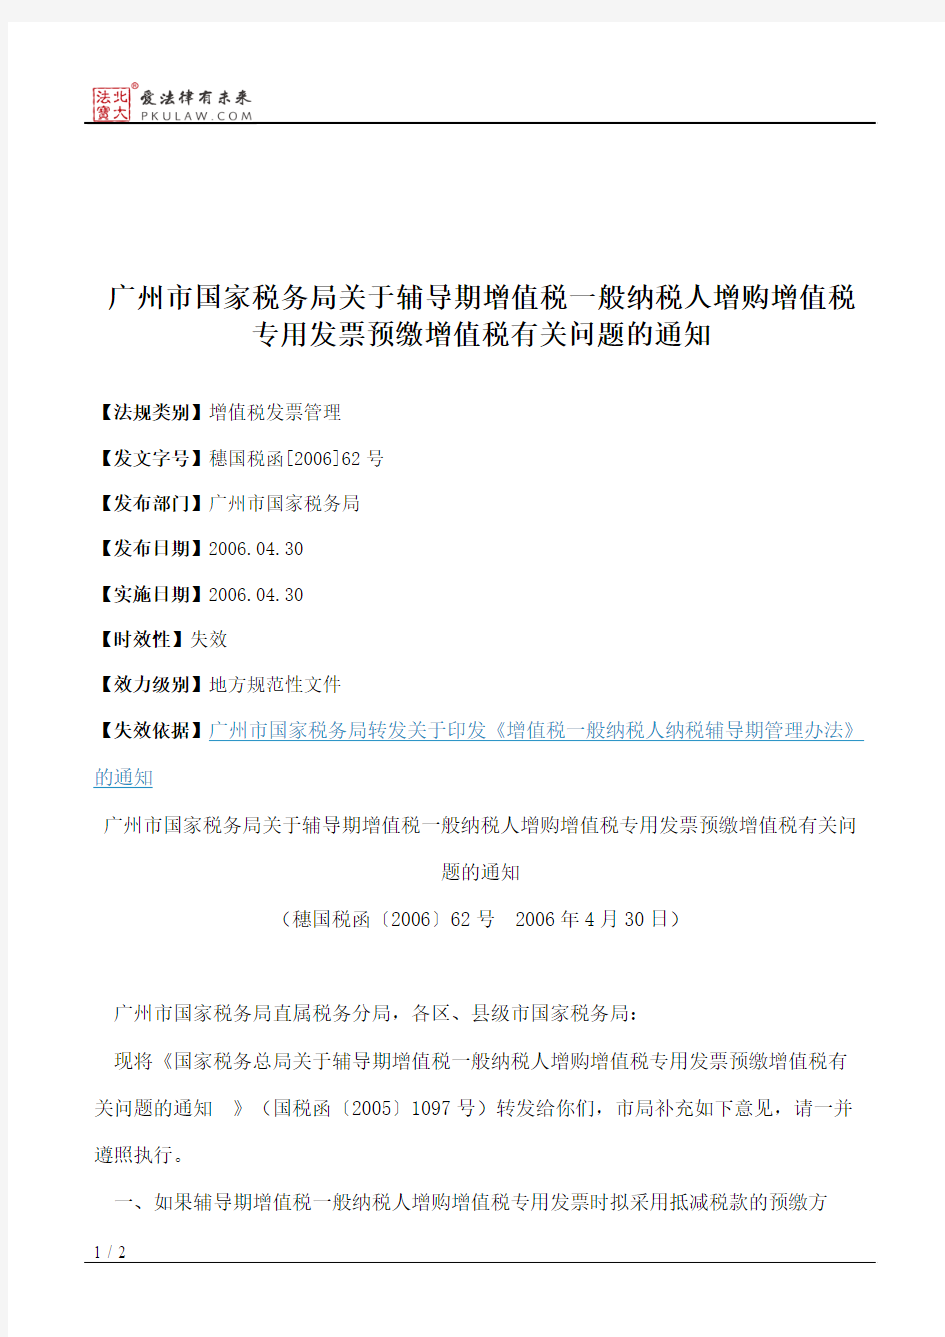 广州市国家税务局关于辅导期增值税一般纳税人增购增值税专用发票